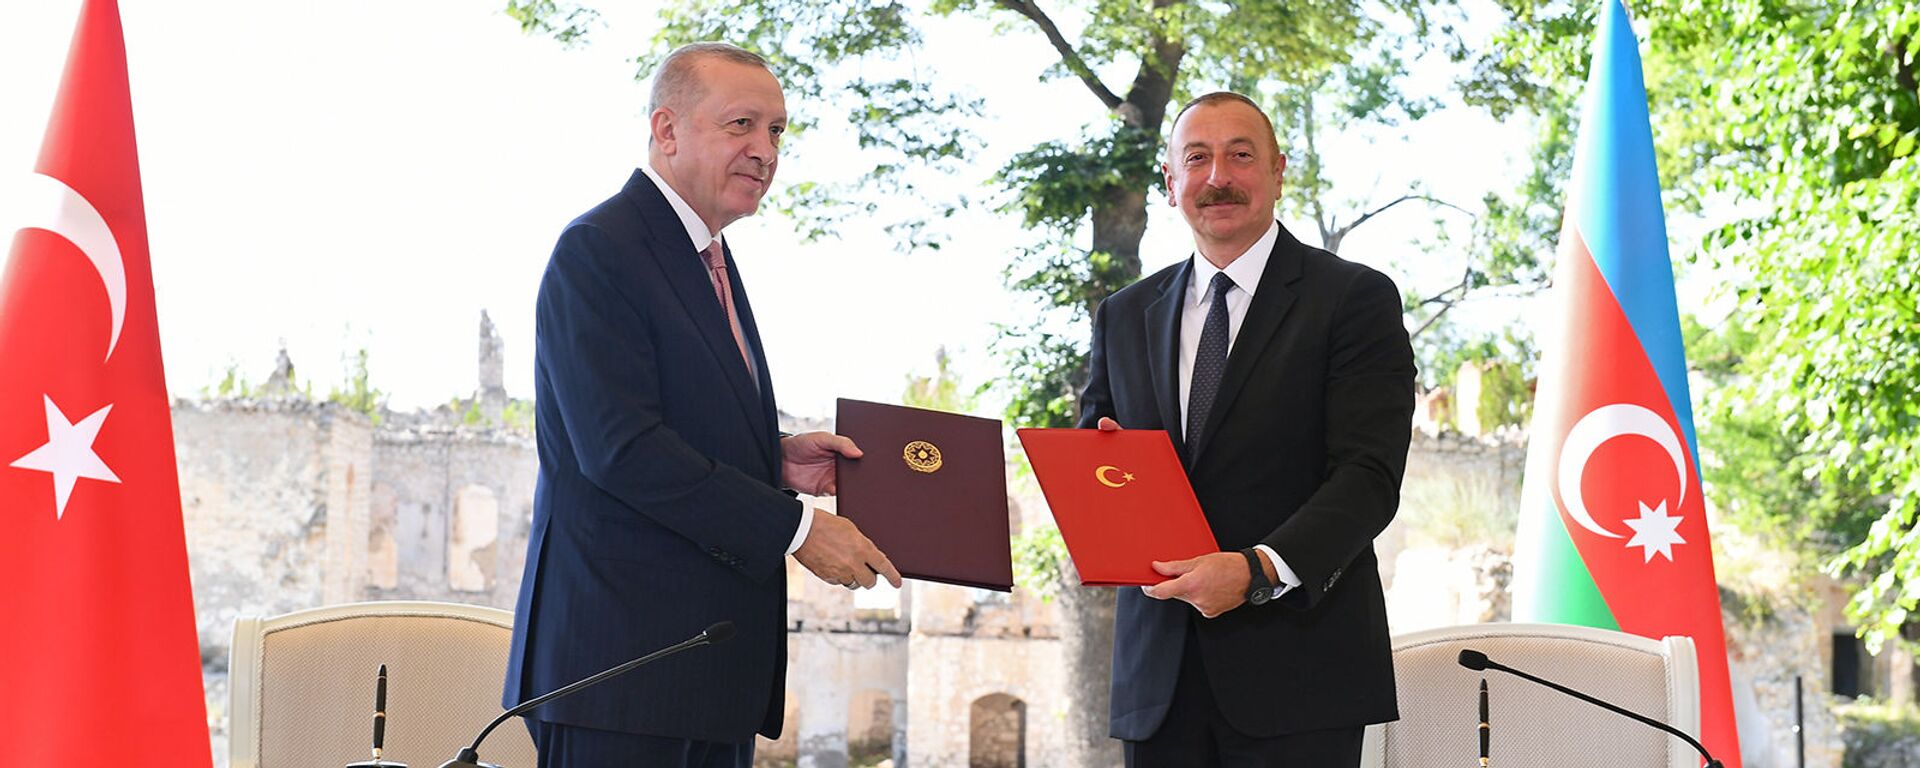 Президенты Турции и Азербайджана Реджеп Тайип Эрдоган и Ильхам Алиев подписывают декларацию о союзнических соглашениях (15 июня 2021). Шуши - Sputnik Արմենիա, 1920, 17.06.2021